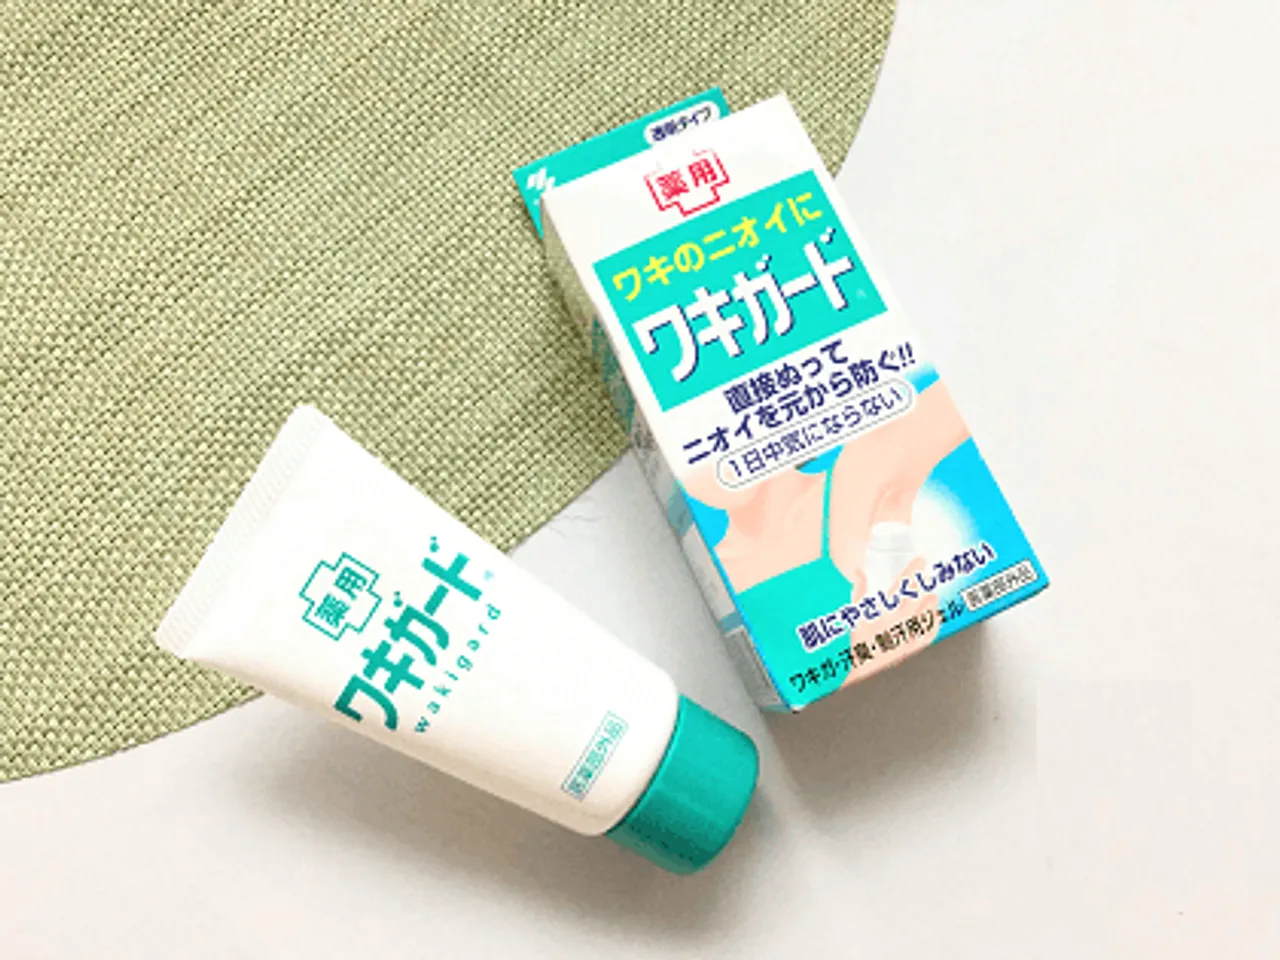 Lăn khử mùi Kobayashi Nhật Bản dạng gel lành tính chăm sóc da dịu nhẹ, tự nhiên